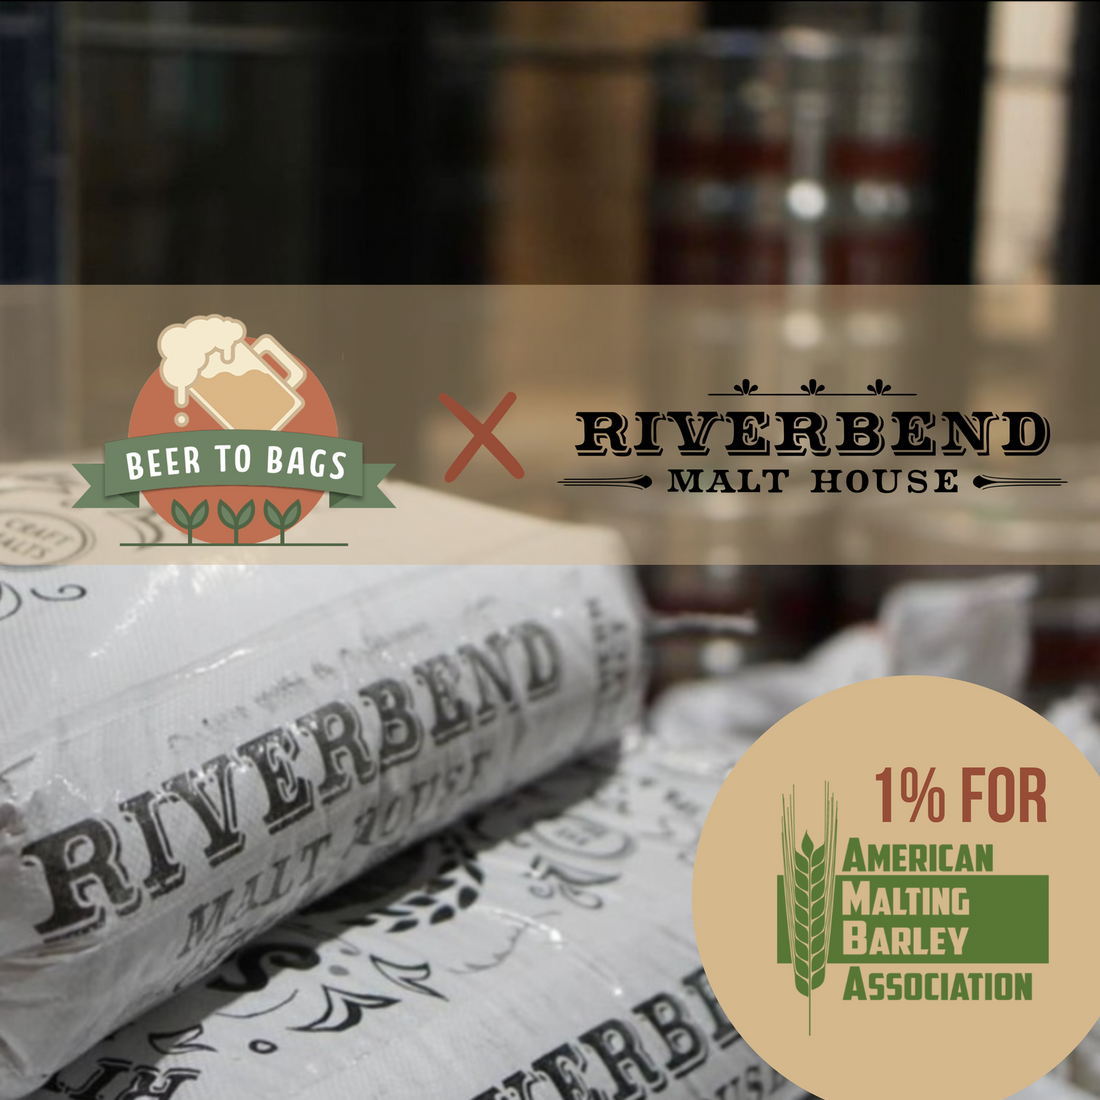 Riverbend Malt House Grants Beer to Bags Licensing